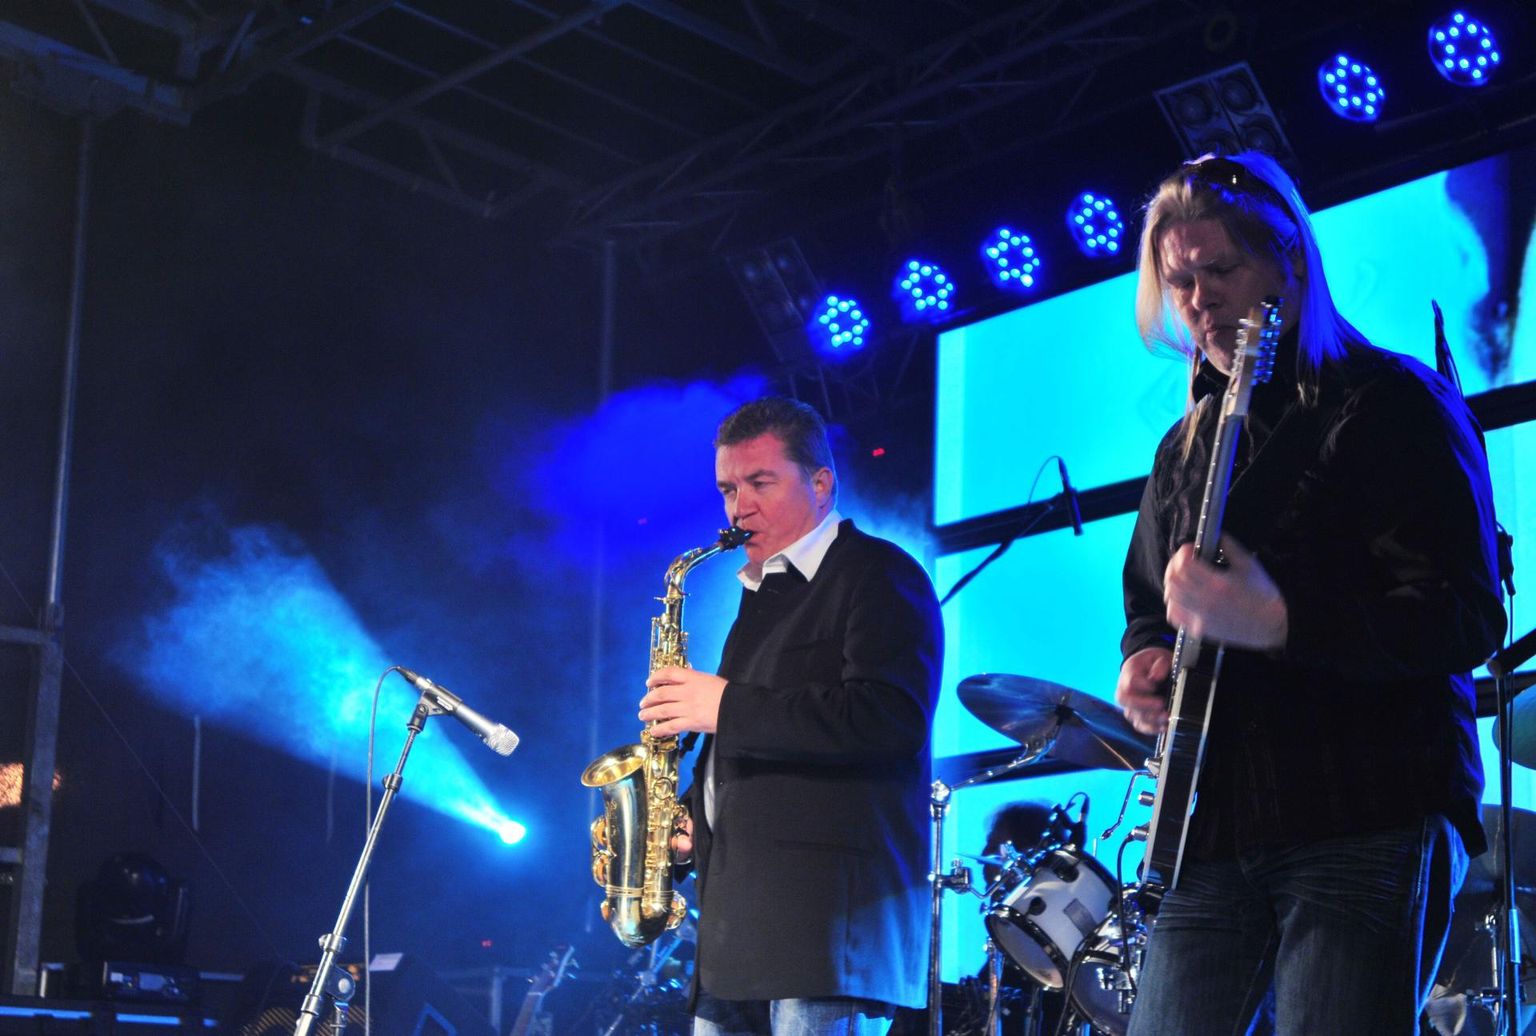 Ansambel Mahavok esines 2011. aastal Tartu Tähetorni 200 aastapäeva puhul kontserdiprogrammiga "Galaktikad".